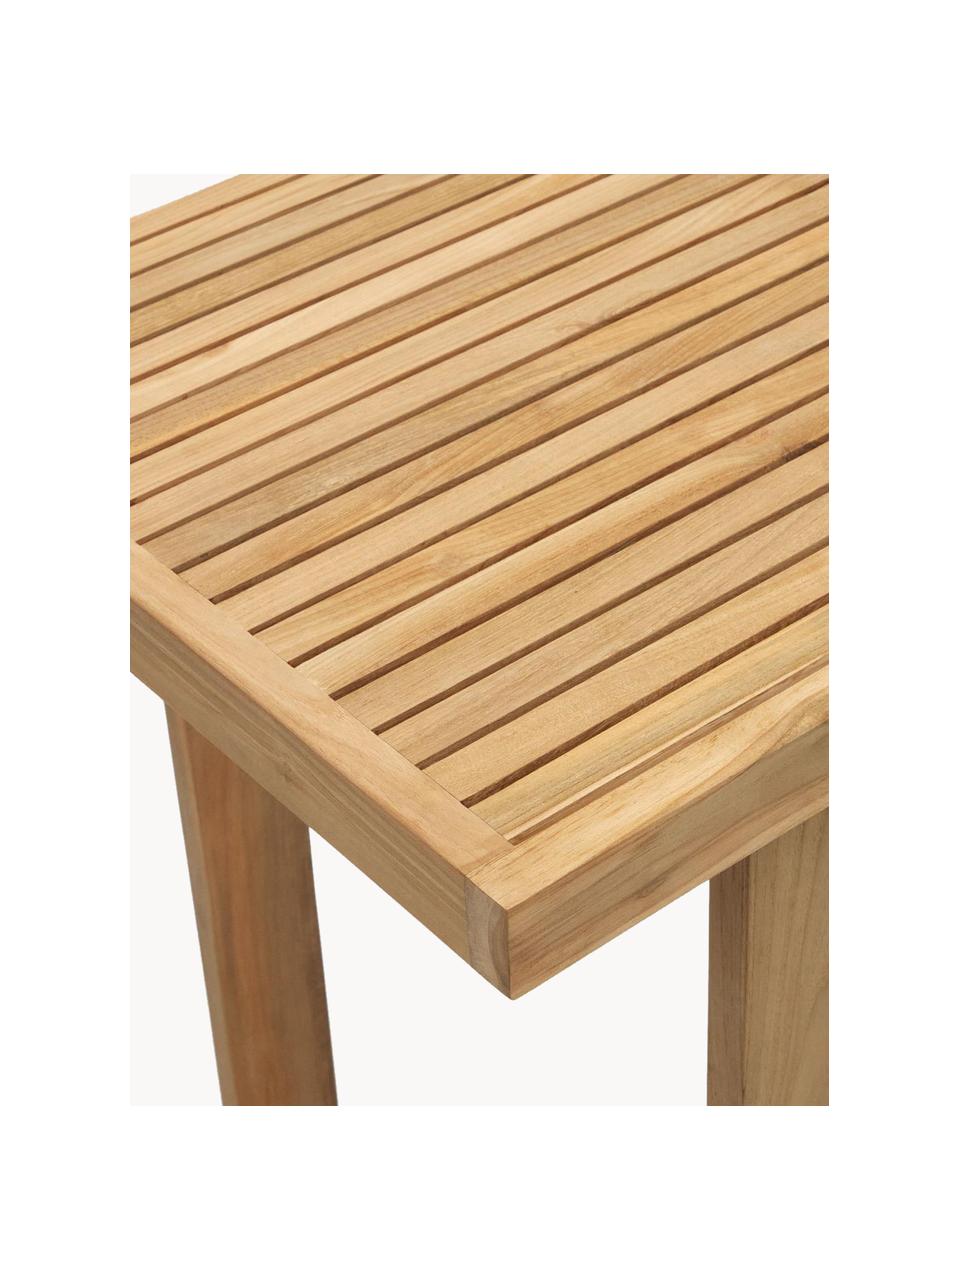 Zahradní stůl z teakového dřeva Canadell, V 105 cm, 100 % teakové dřevo, Teakové dřevo, Š 140 cm, H 70 cm